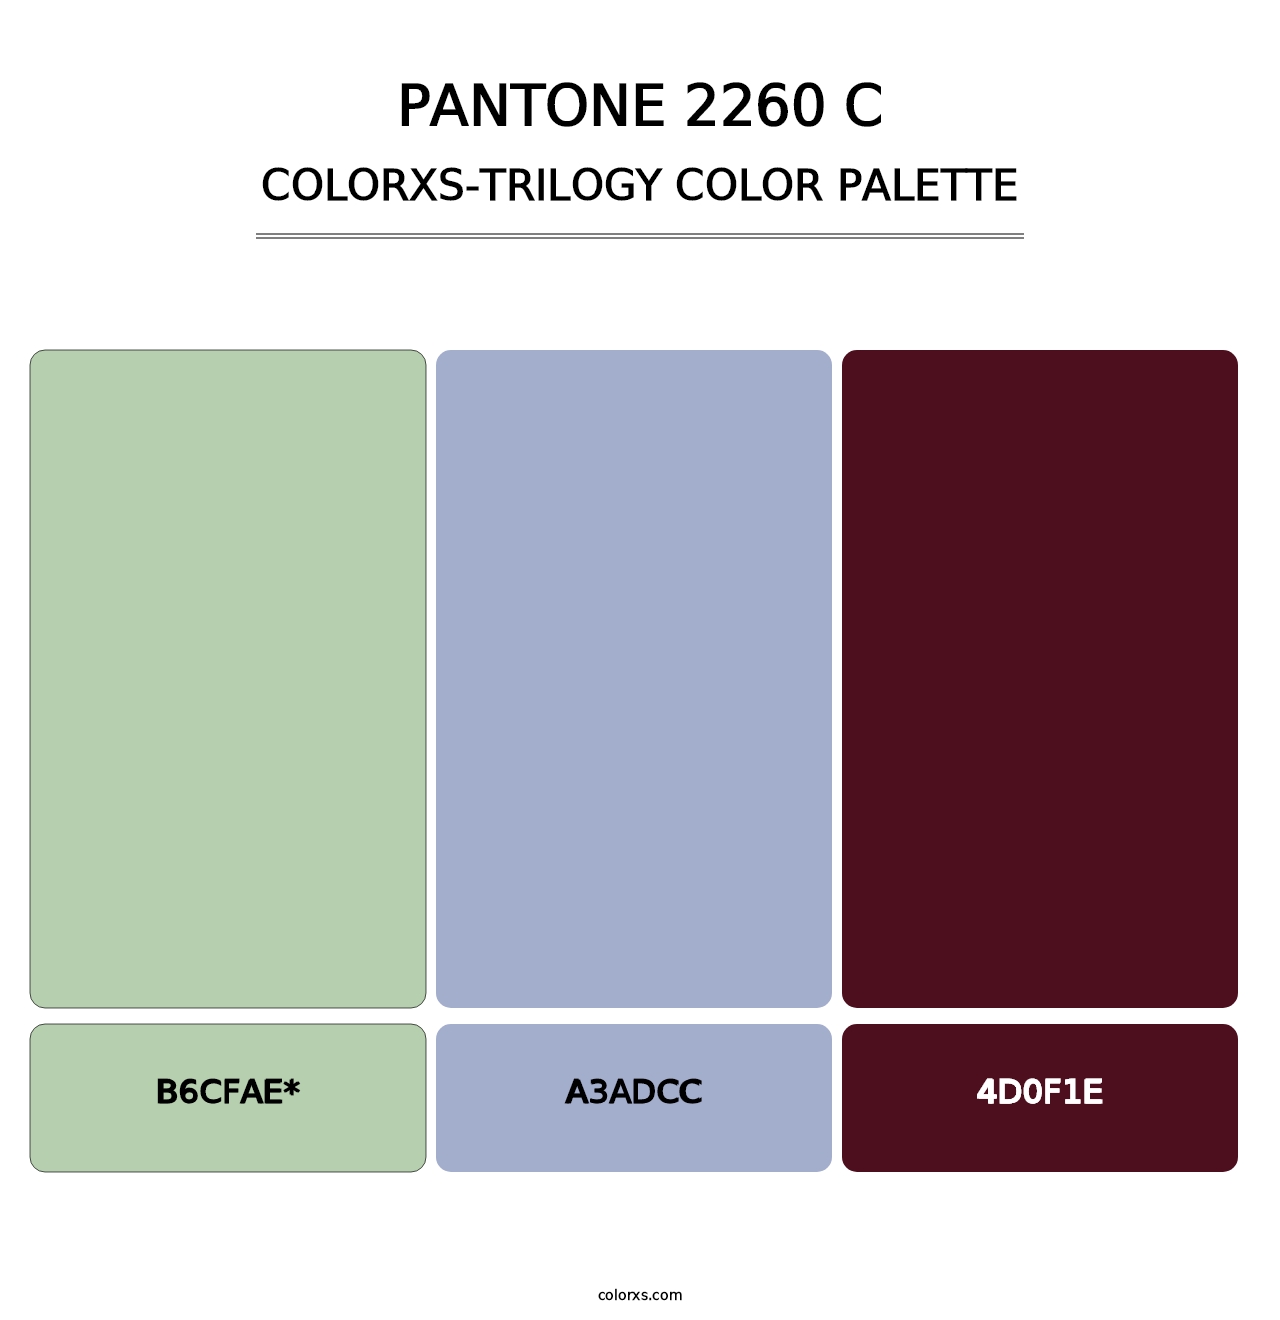 PANTONE 2260 C - Colorxs Trilogy Palette